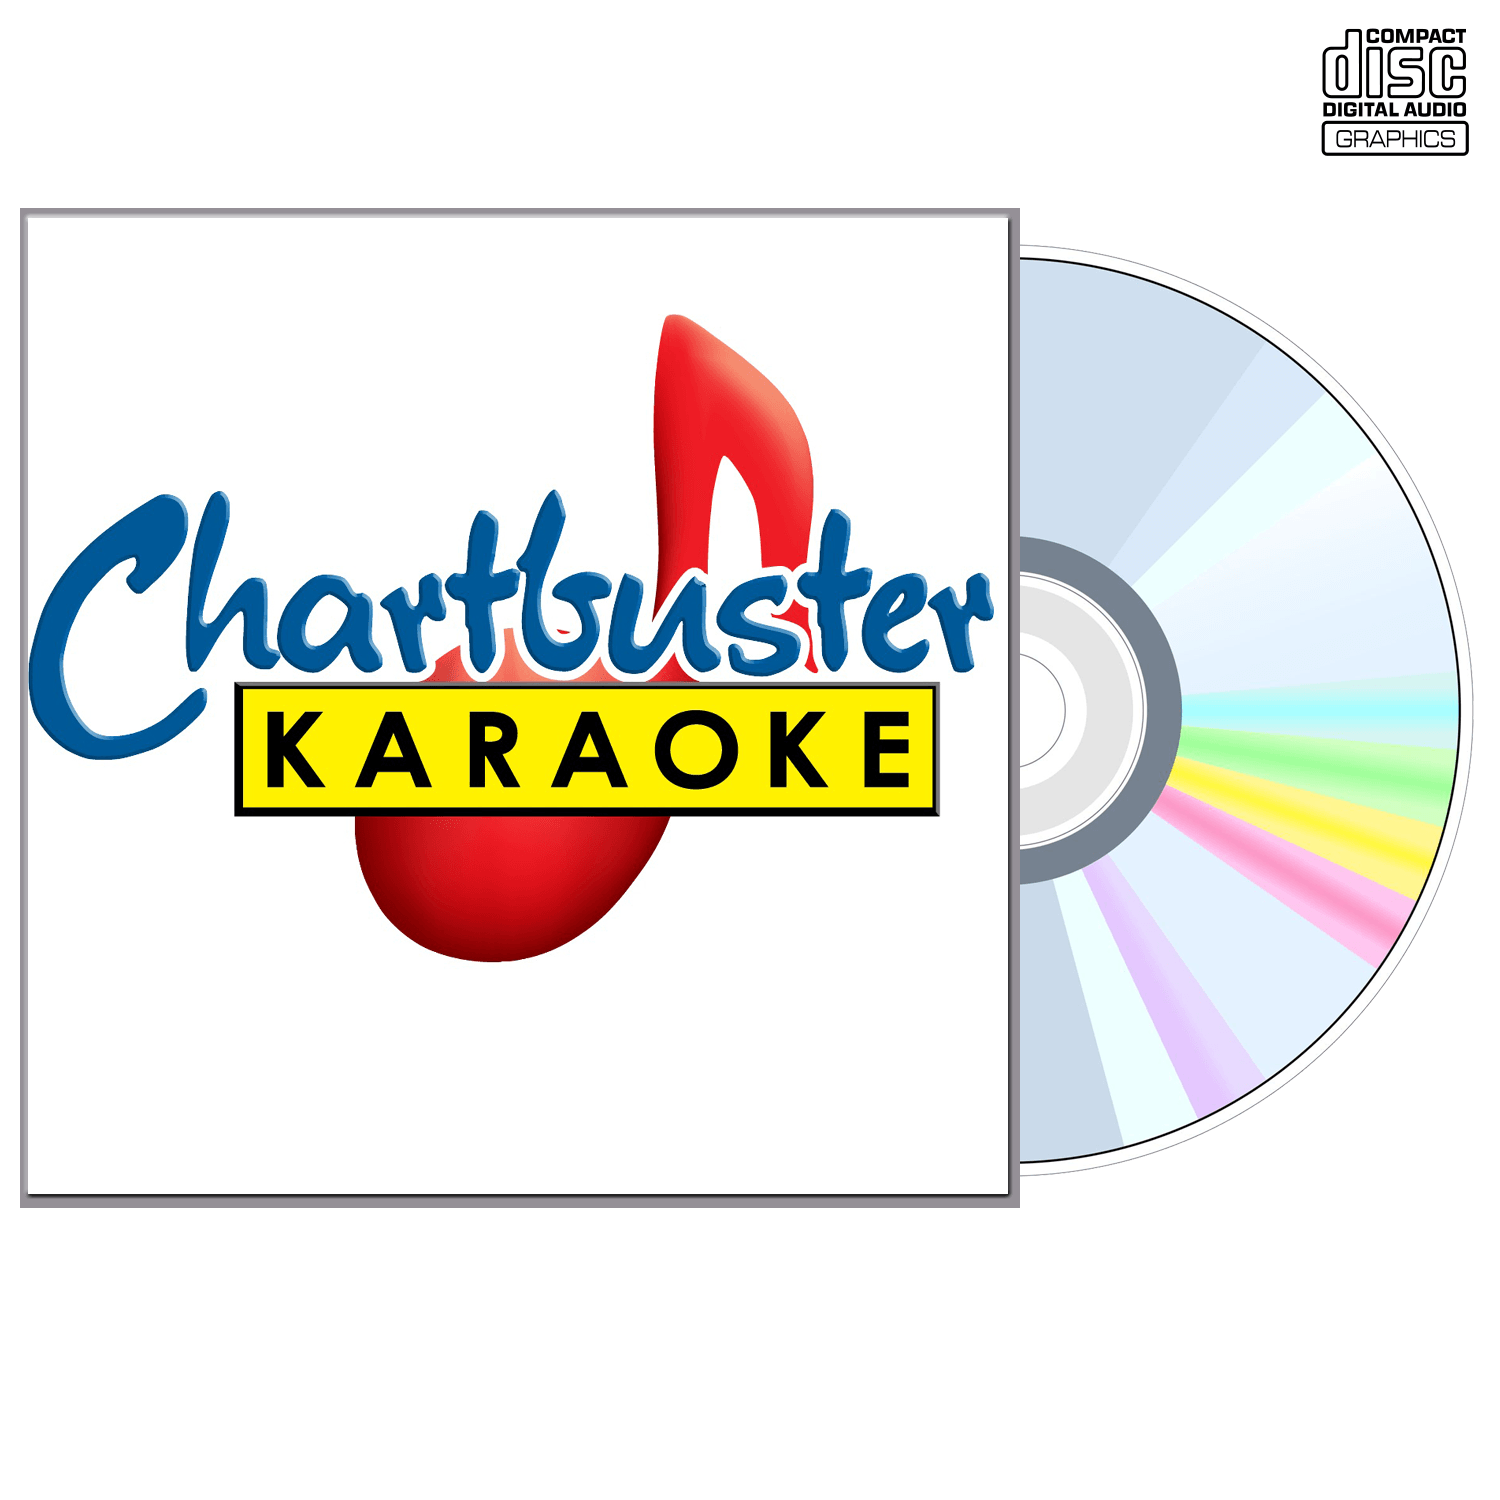 Poison - CD+G - Chartbuster Karaoke - Karaoke Home Entertainment